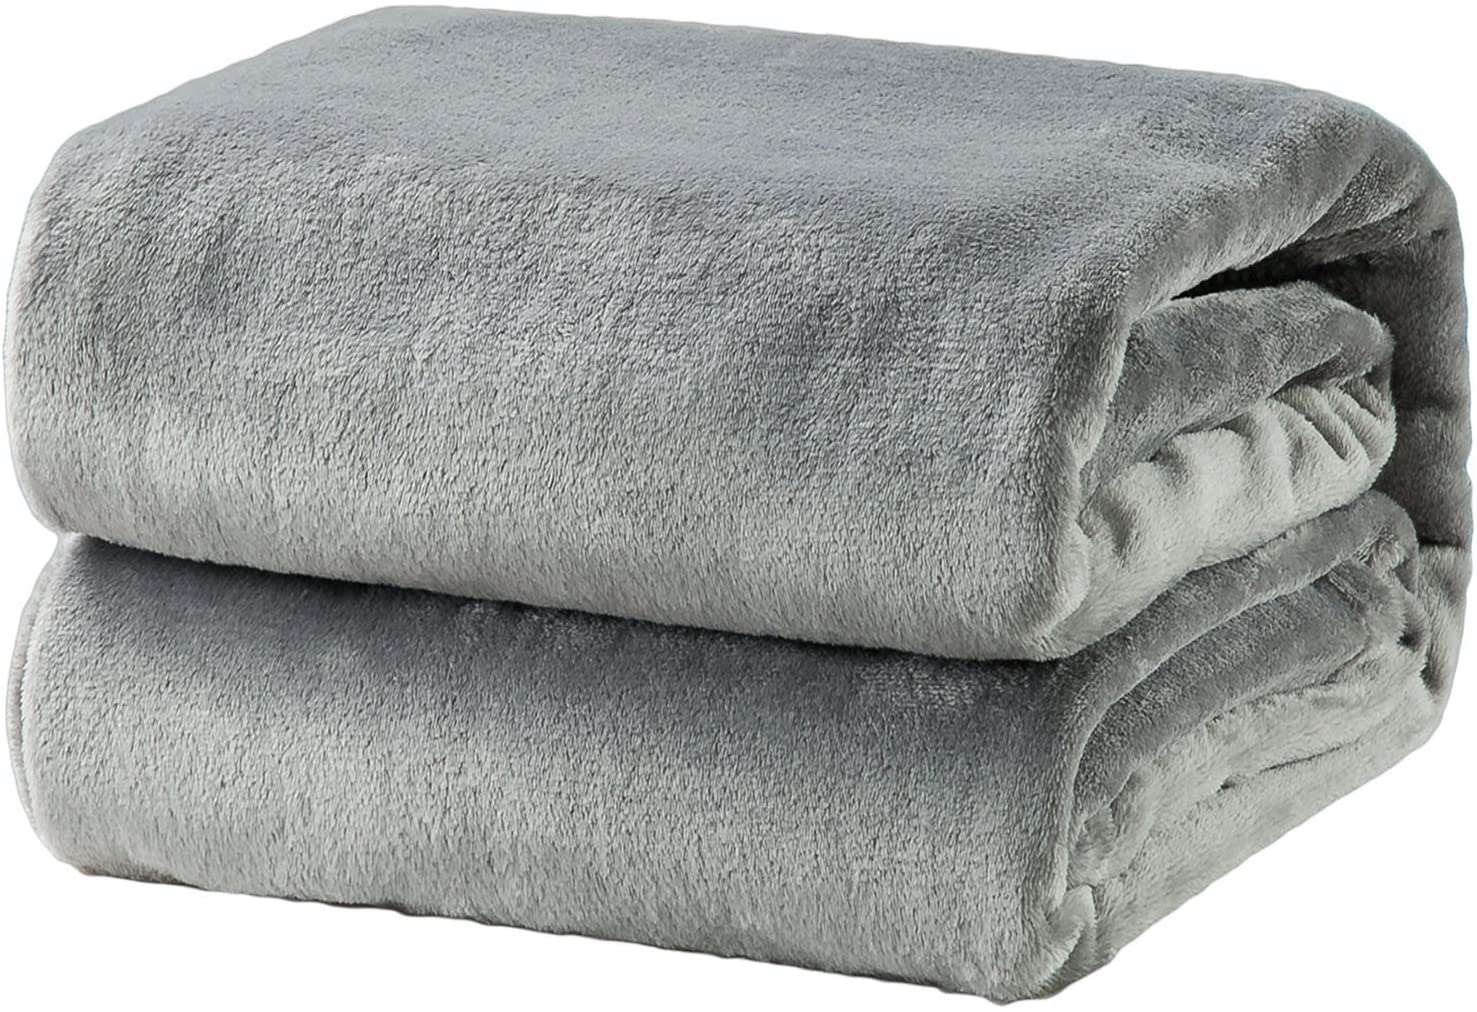 Luxury Blanket Bedsure Flannel Fleece Lightweight White Twin Size Cozy Plush 